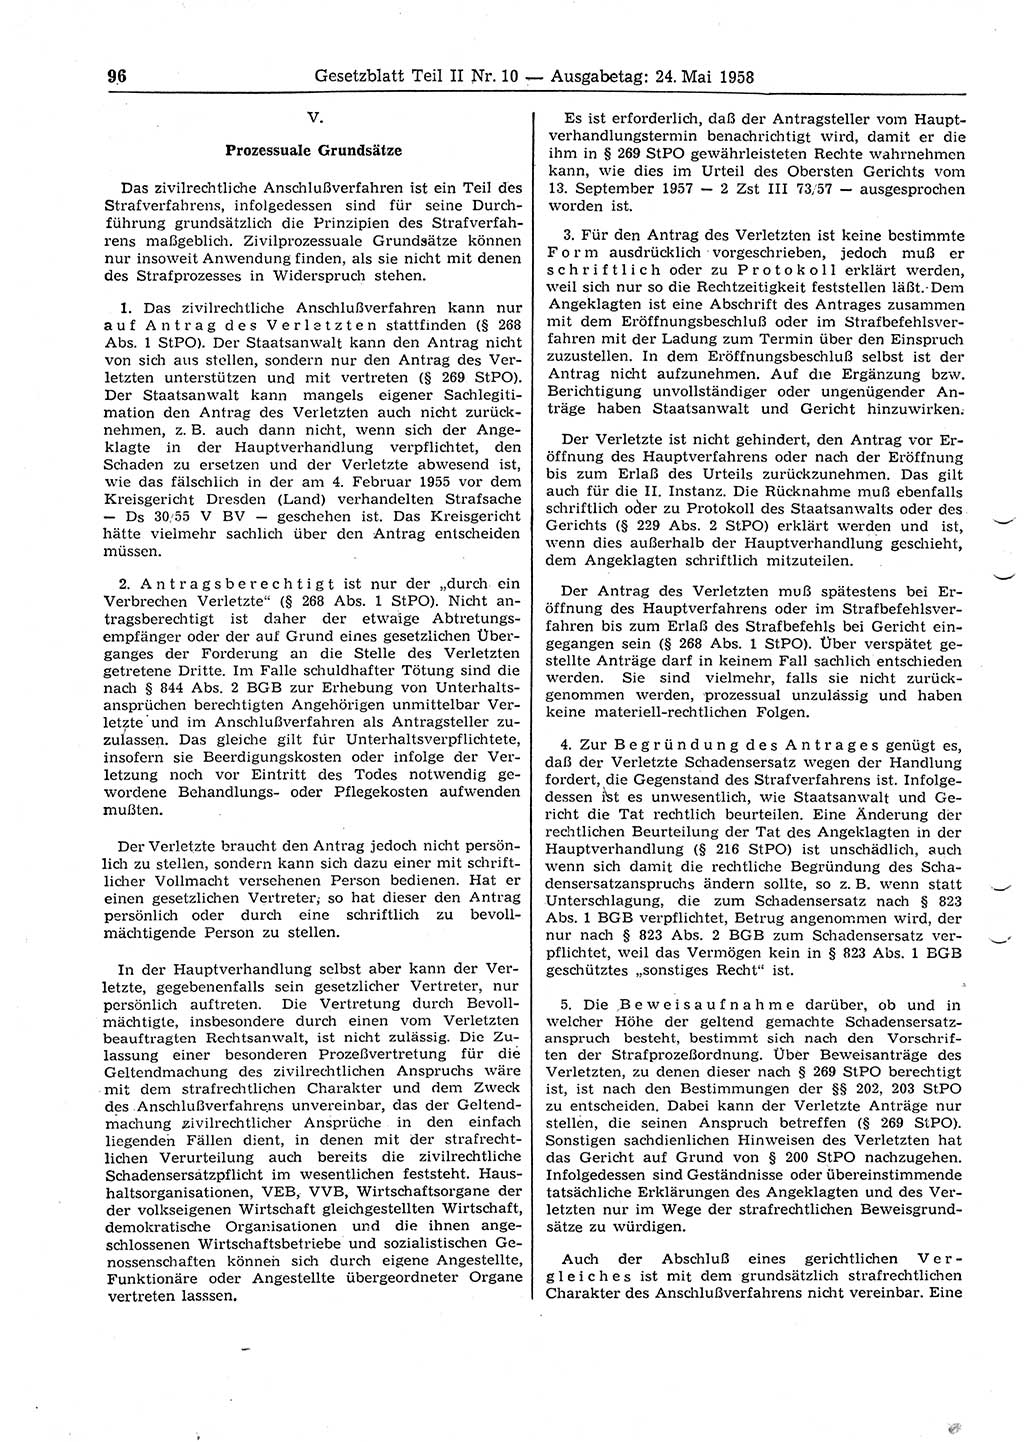 Gesetzblatt (GBl.) der Deutschen Demokratischen Republik (DDR) Teil ⅠⅠ 1958, Seite 96 (GBl. DDR ⅠⅠ 1958, S. 96)